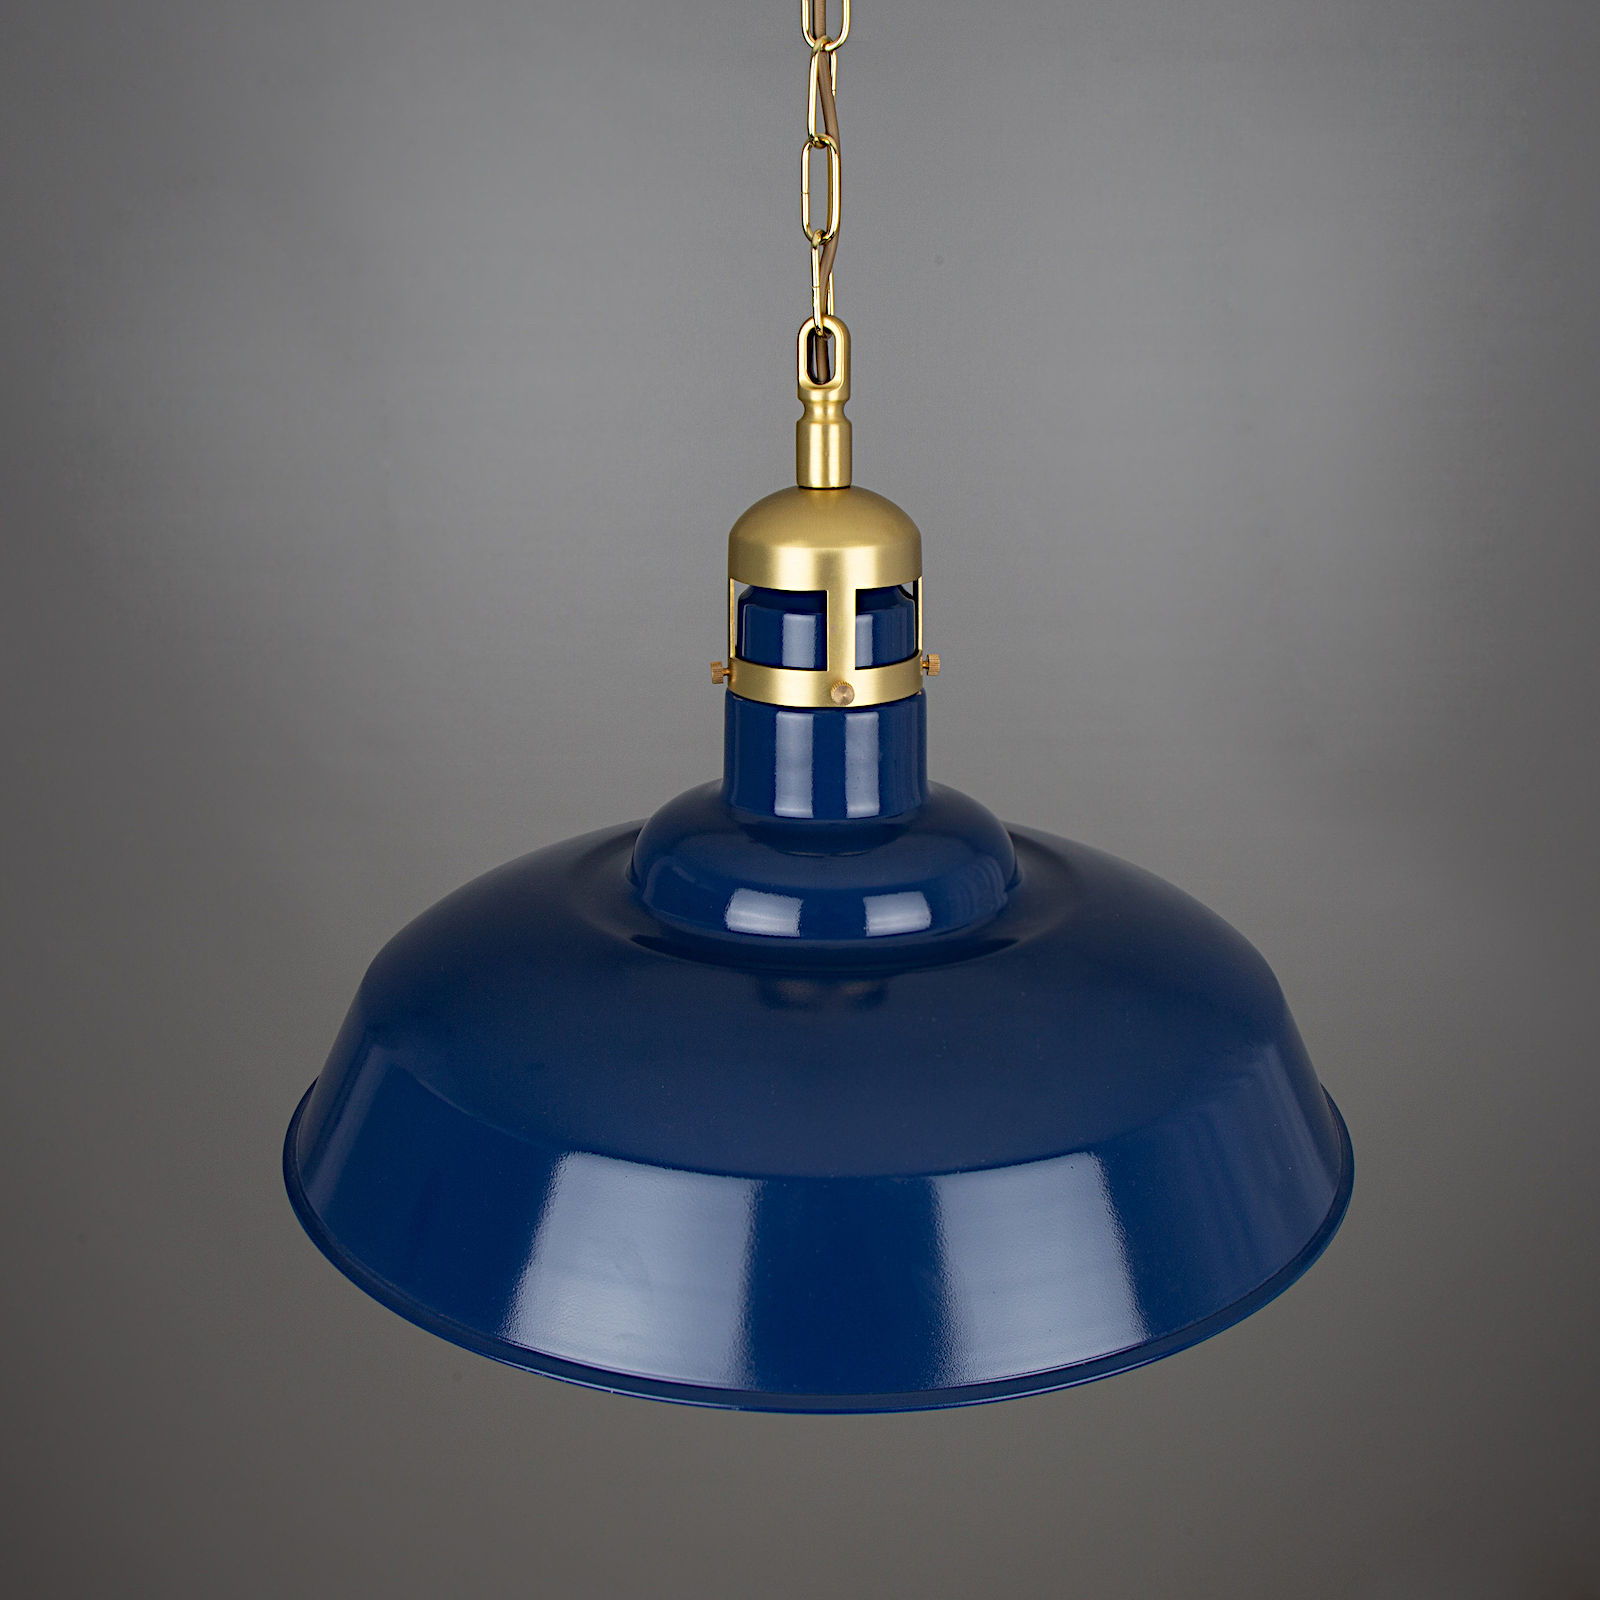 Große Industriestil-Pendelleuchte, blau mit Messing-Details, Ø 50 cm: Messing satiniert